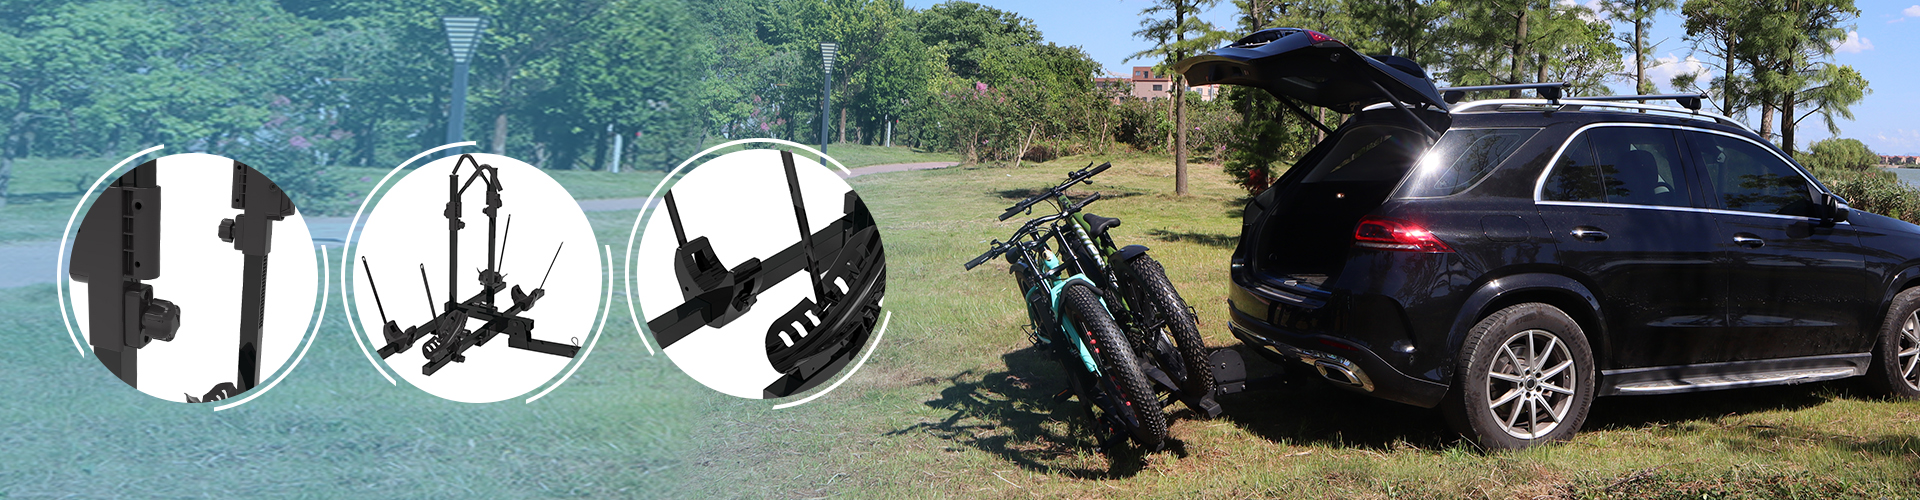 Багажник для велосипеда на сталевій платформі з кріпленням на задньому зчіпному пристрої